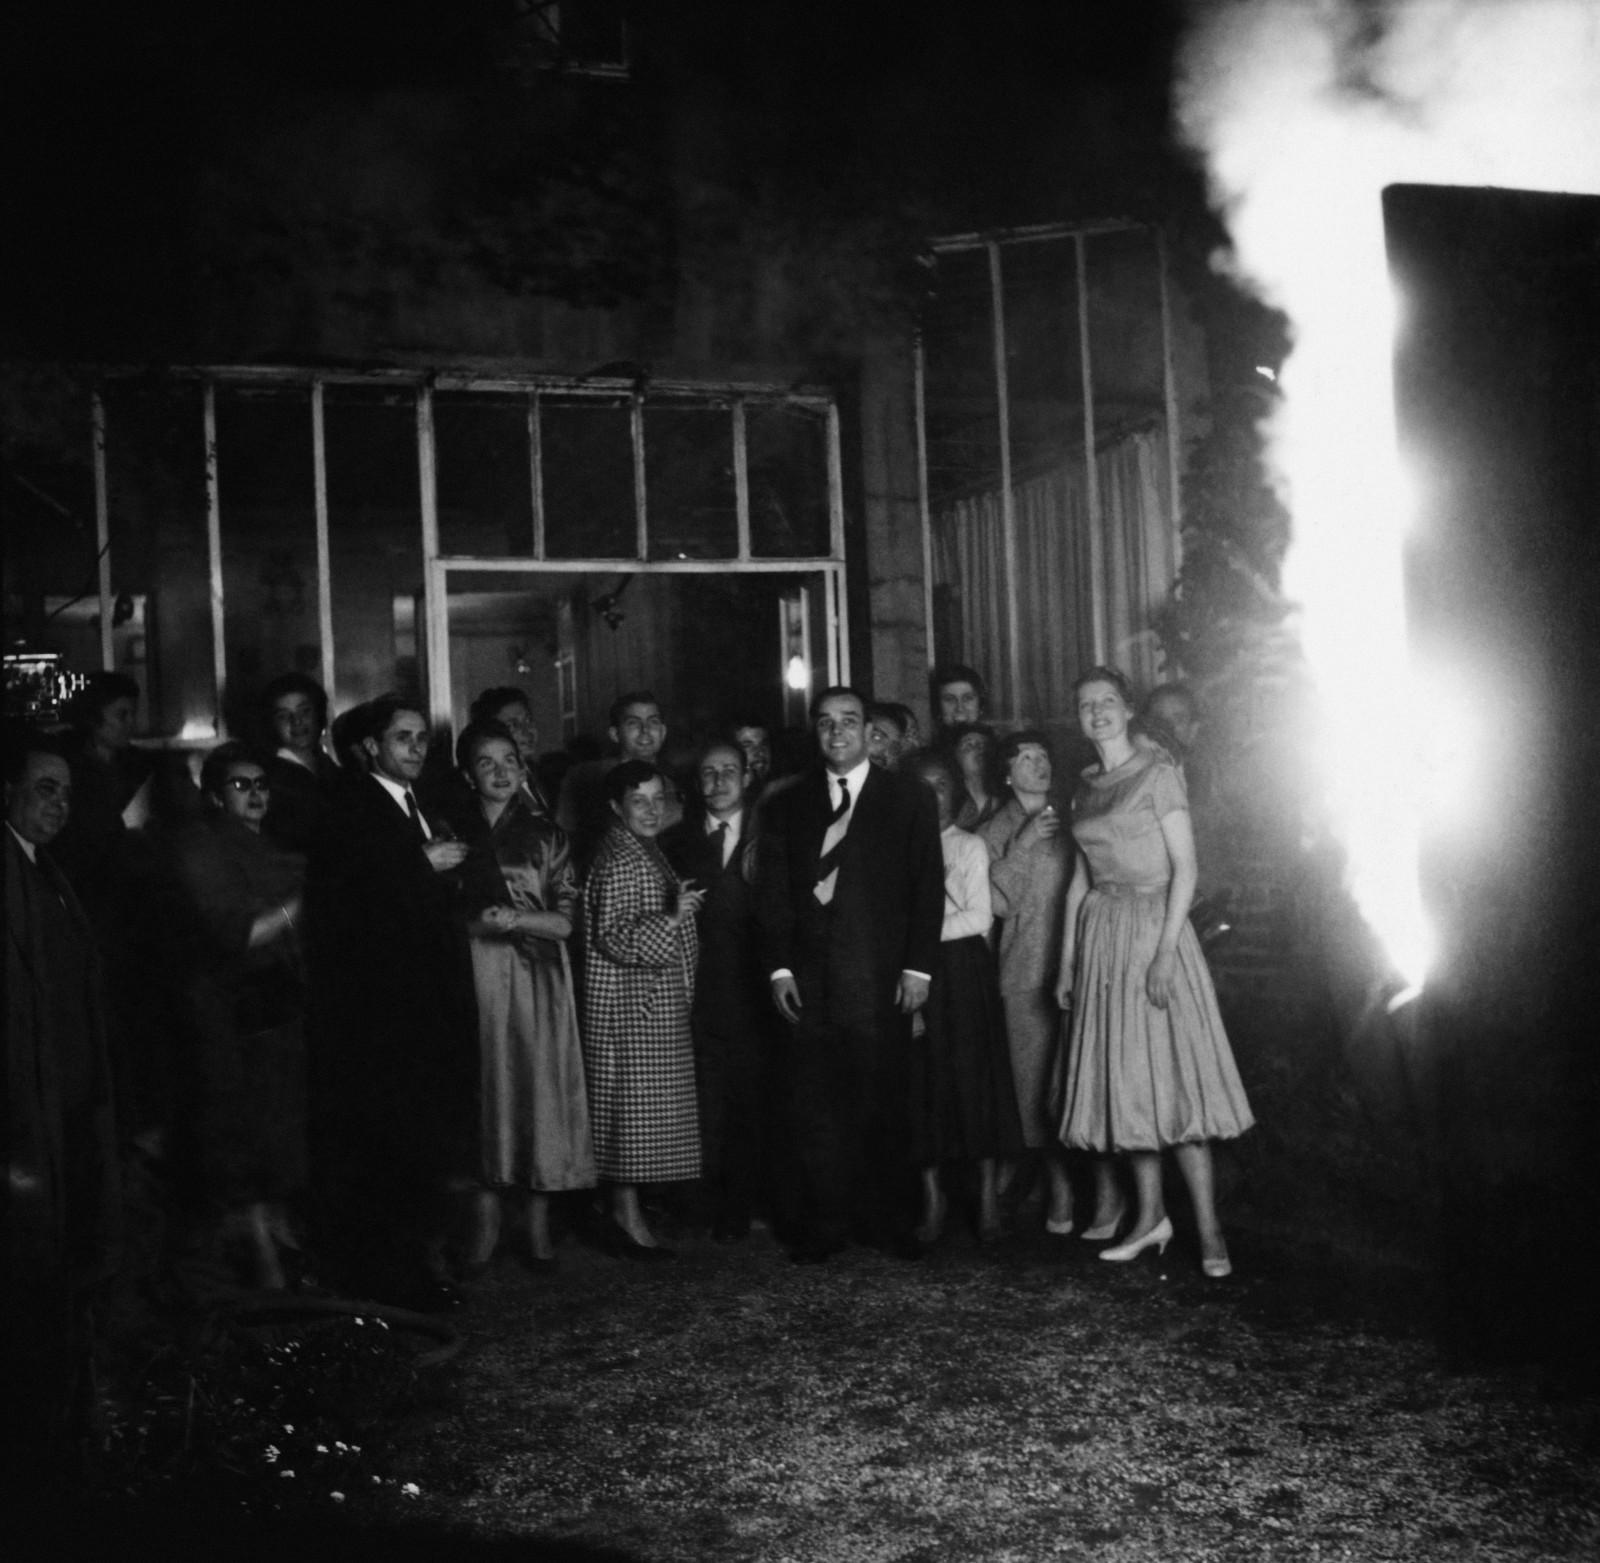 Public devant l'œuvre "Tableau de feu bleu d’une minute", (M 41), avec les feux de Bengale allumés, dans les jardins de la galerie Colette Allendy, Paris, 1957